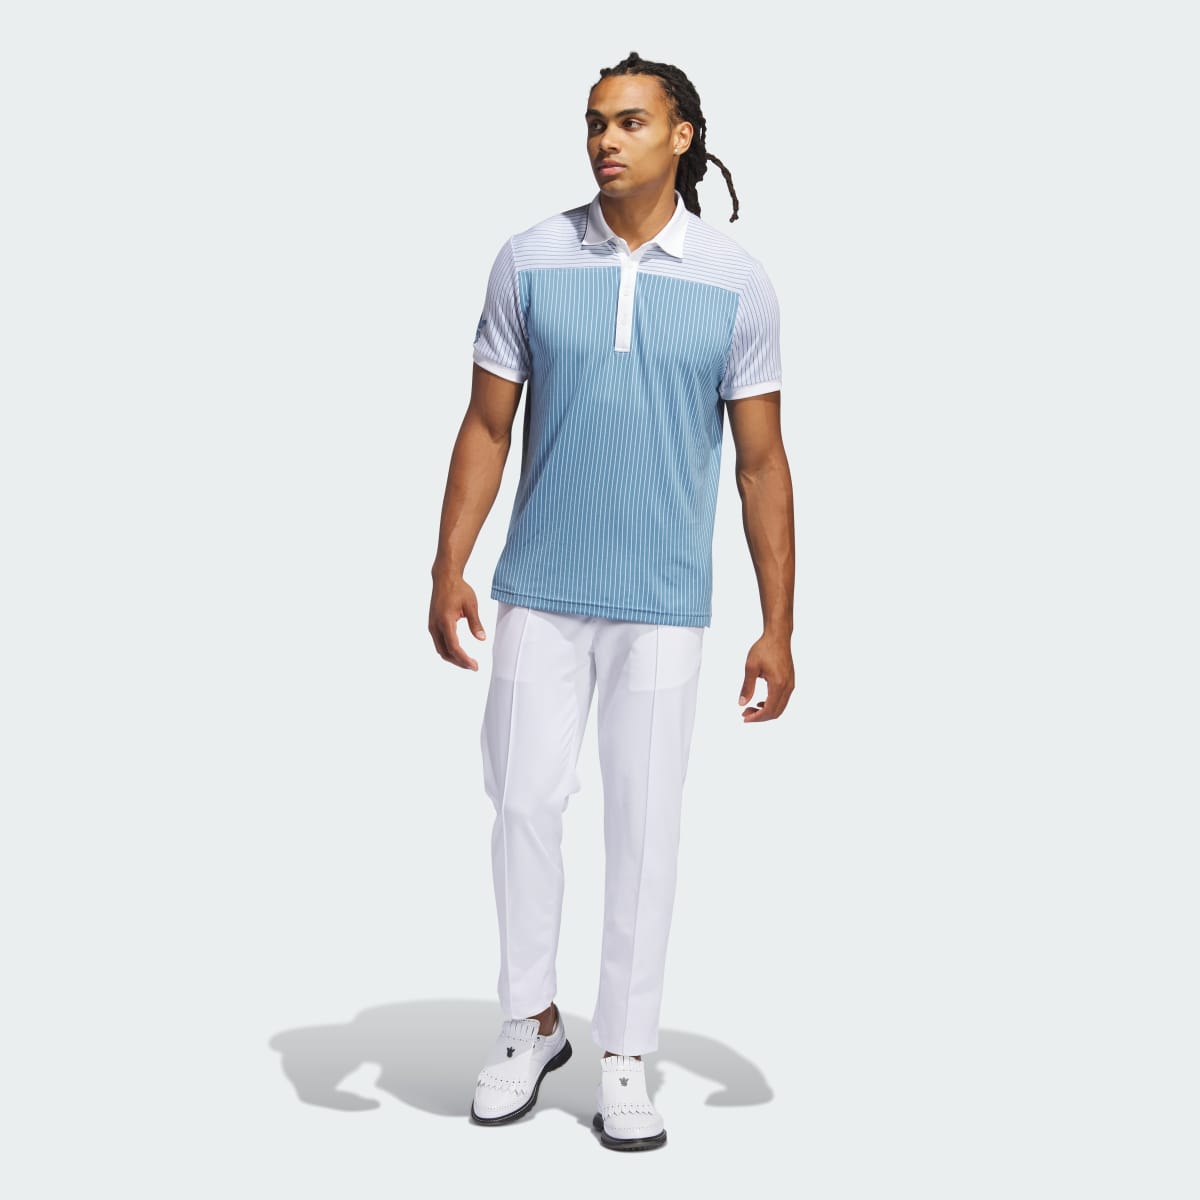 Adidas Bogey Boys Golf Polo Shirt. 6